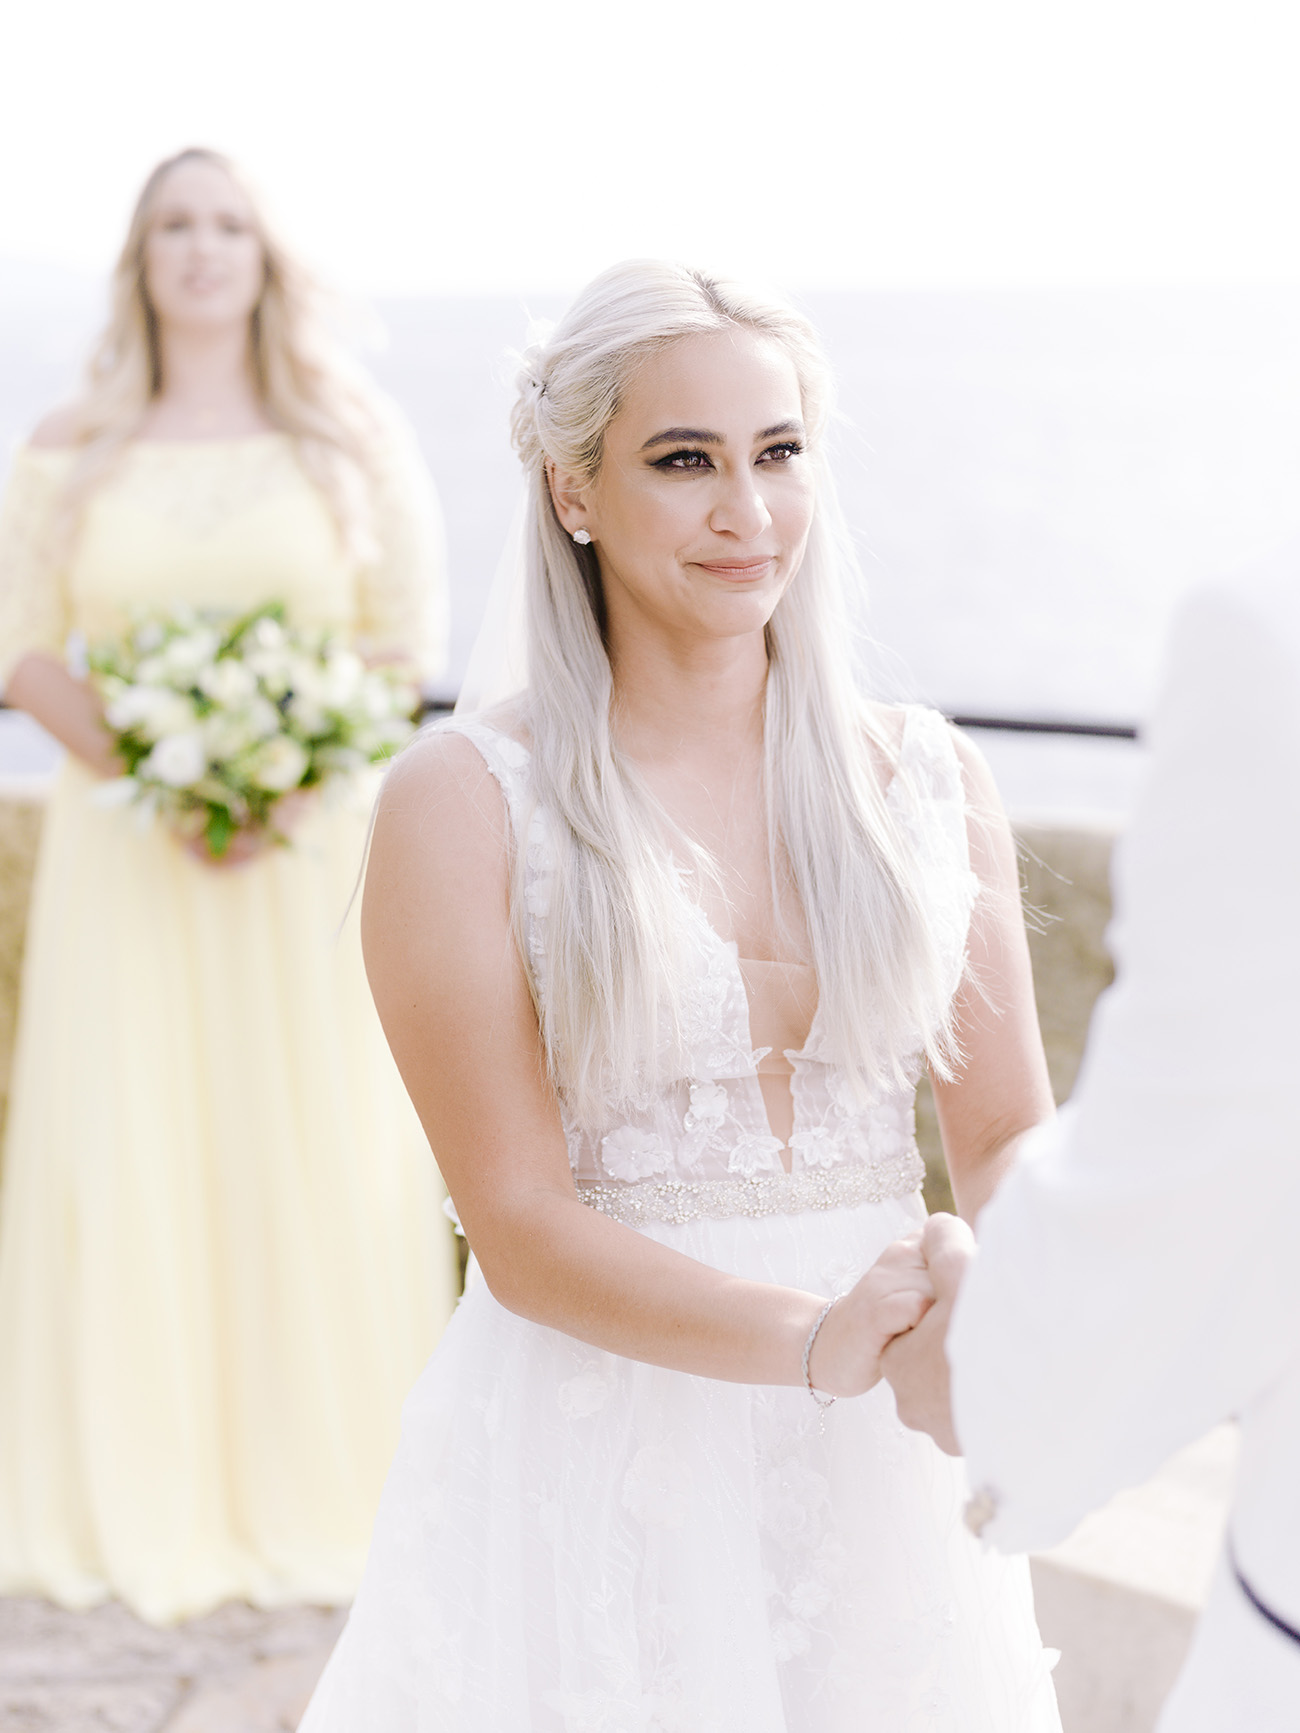 La mariée regarde son epou tendredement lors de la crérémonie